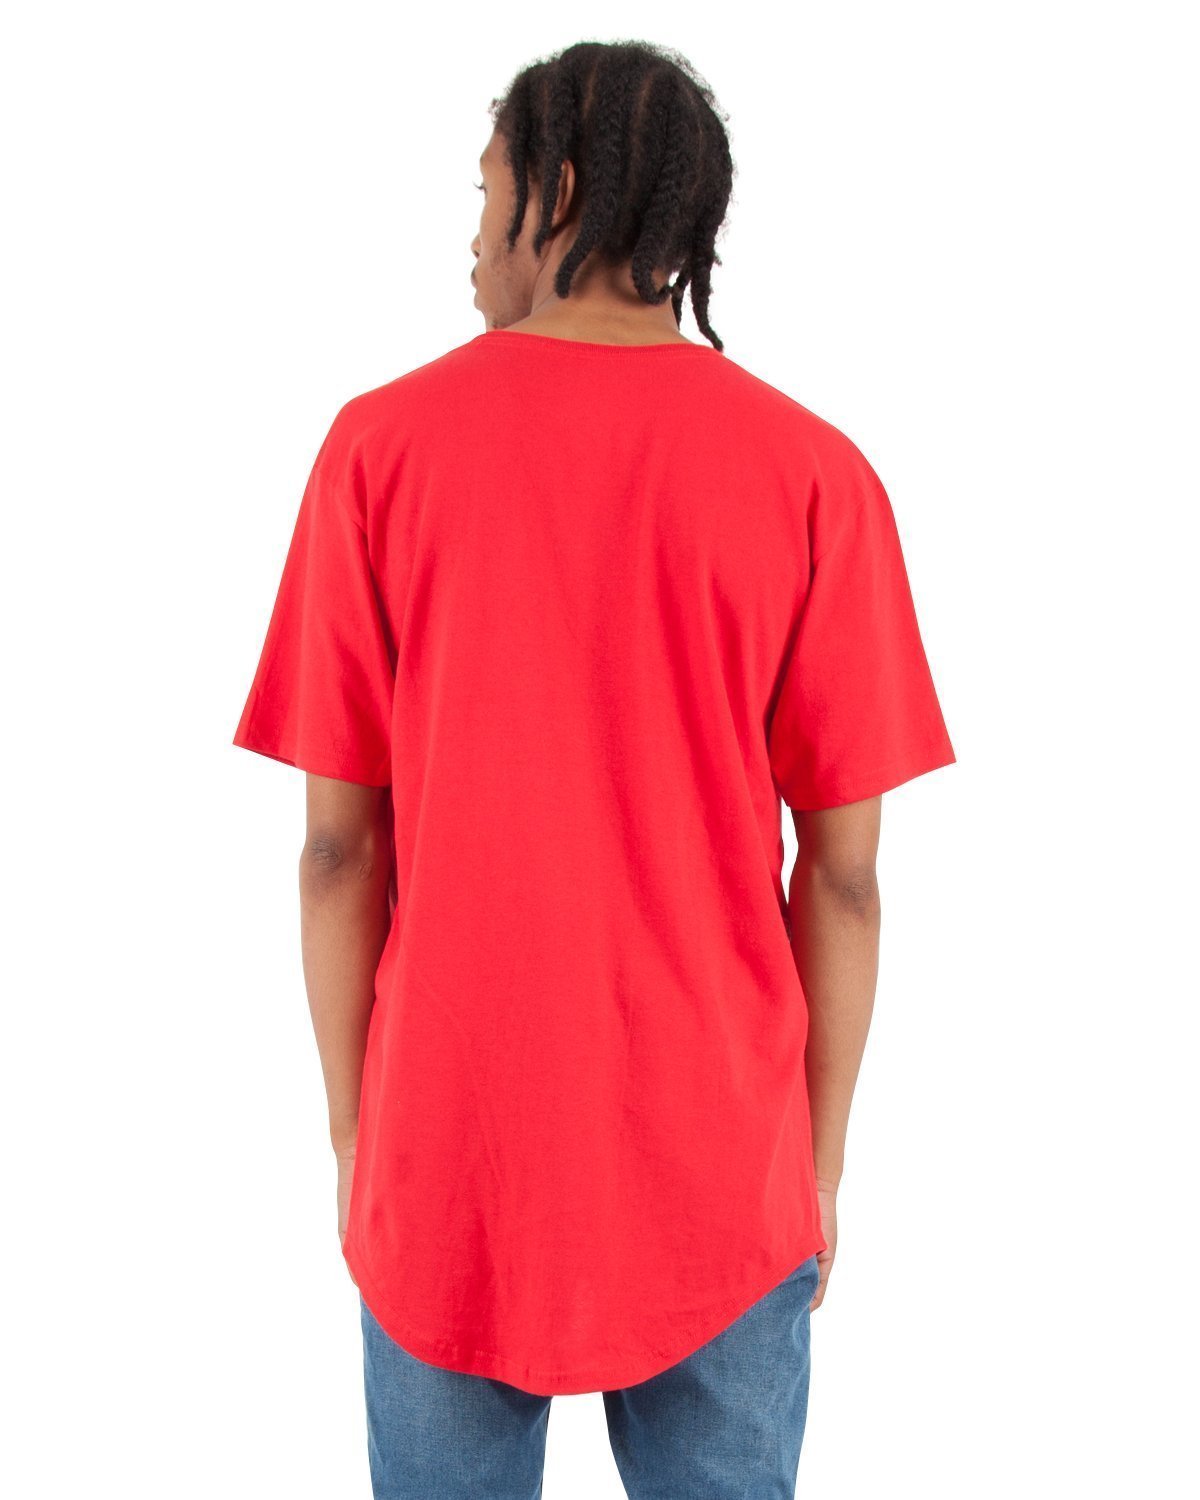 Shaka Wear Shclt Adult 6 oz., Curved Hem Long T-Shirt - Royal - 2XL